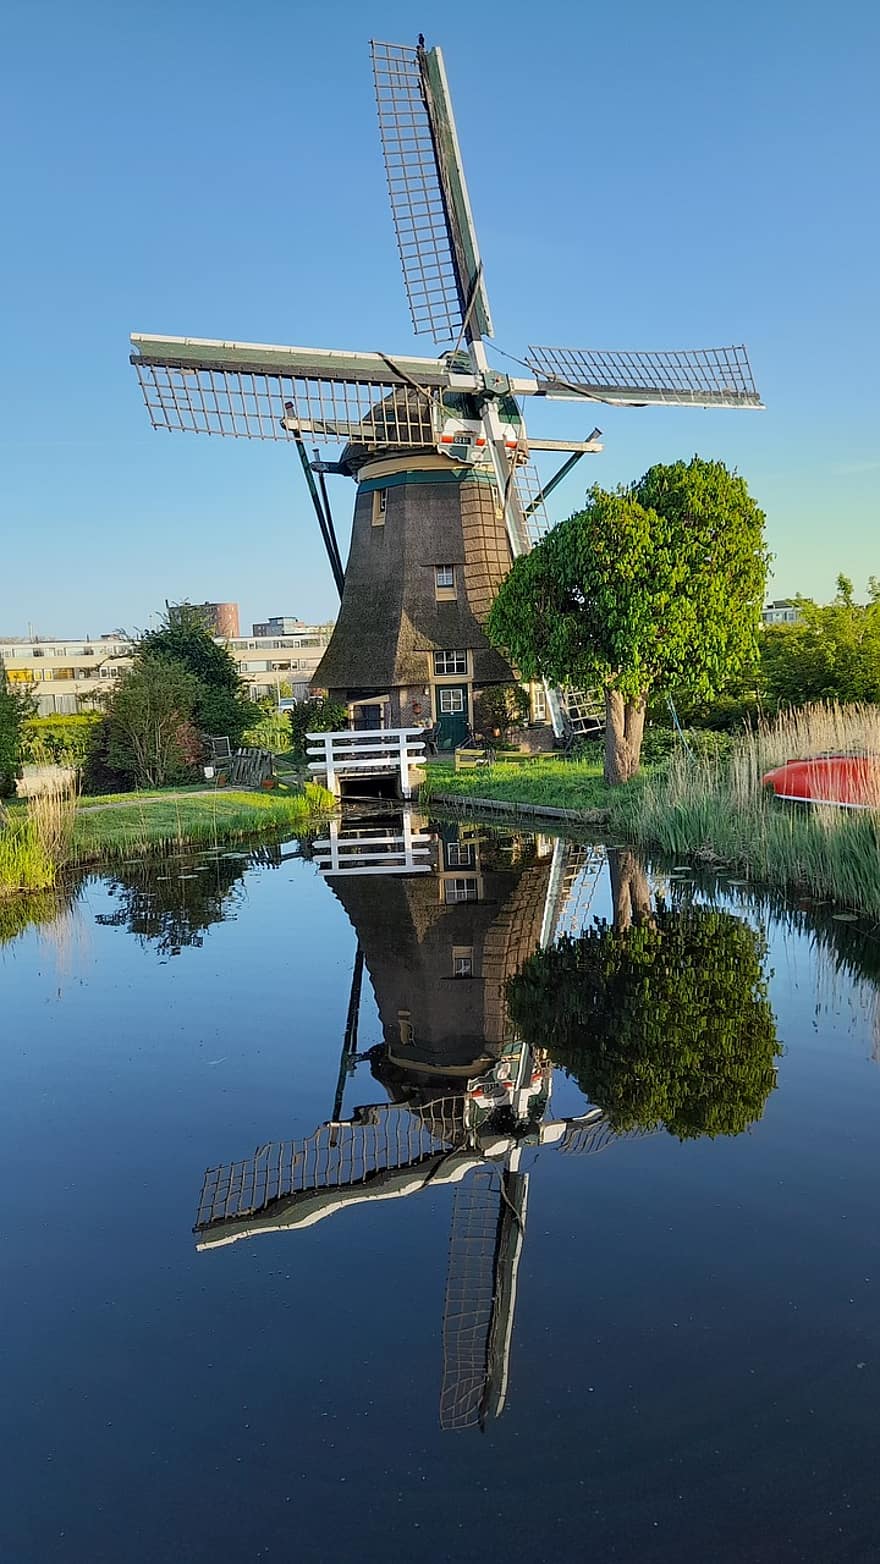 вітряк, Нідерланди, природи, рефлексія, енергія, потужність, води, сільська сцена, літо, відоме місце, культур